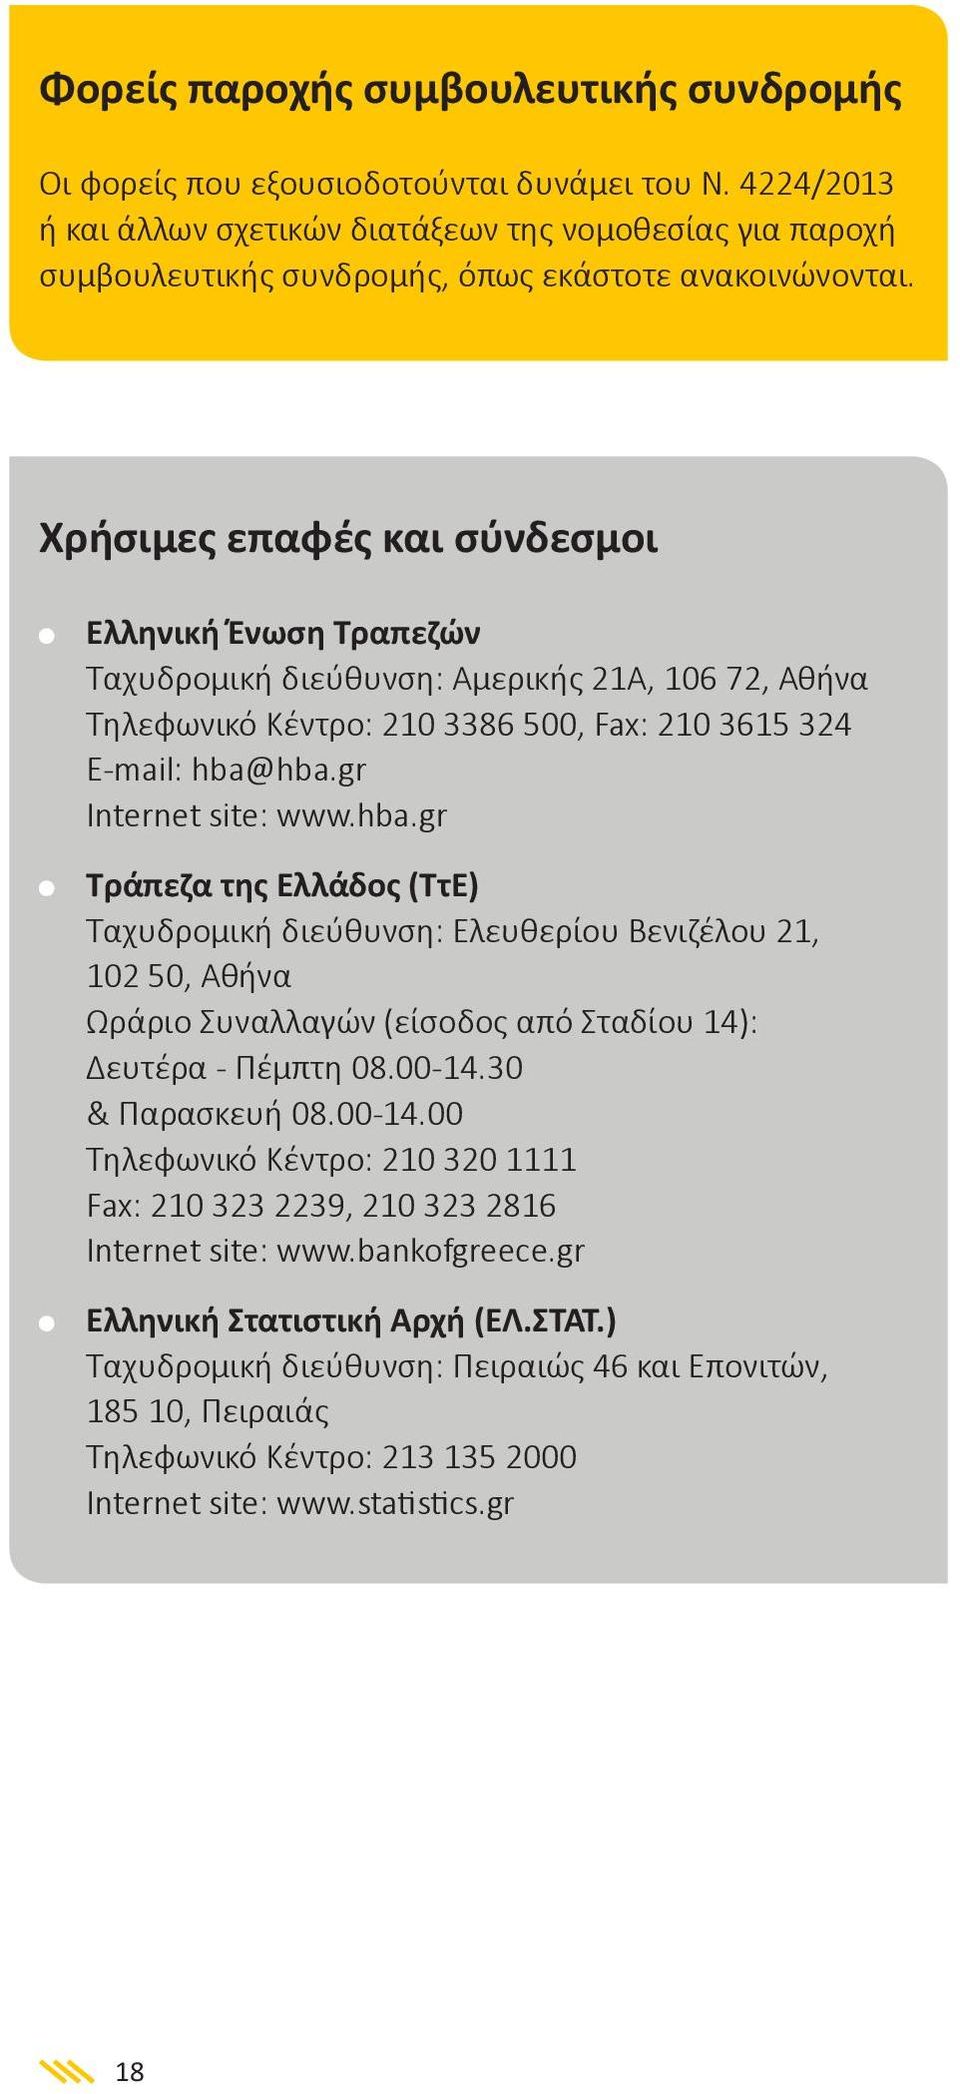 Χρήσιμες επαφές και σύνδεσμοι Ελληνική Ένωση Τραπεζών Ταχυδρομική διεύθυνση: Αμερικής 21Α, 106 72, Αθήνα Τηλεφωνικό Κέντρο: 210 3386 500, Fax: 210 3615 324 E-mail: hba@